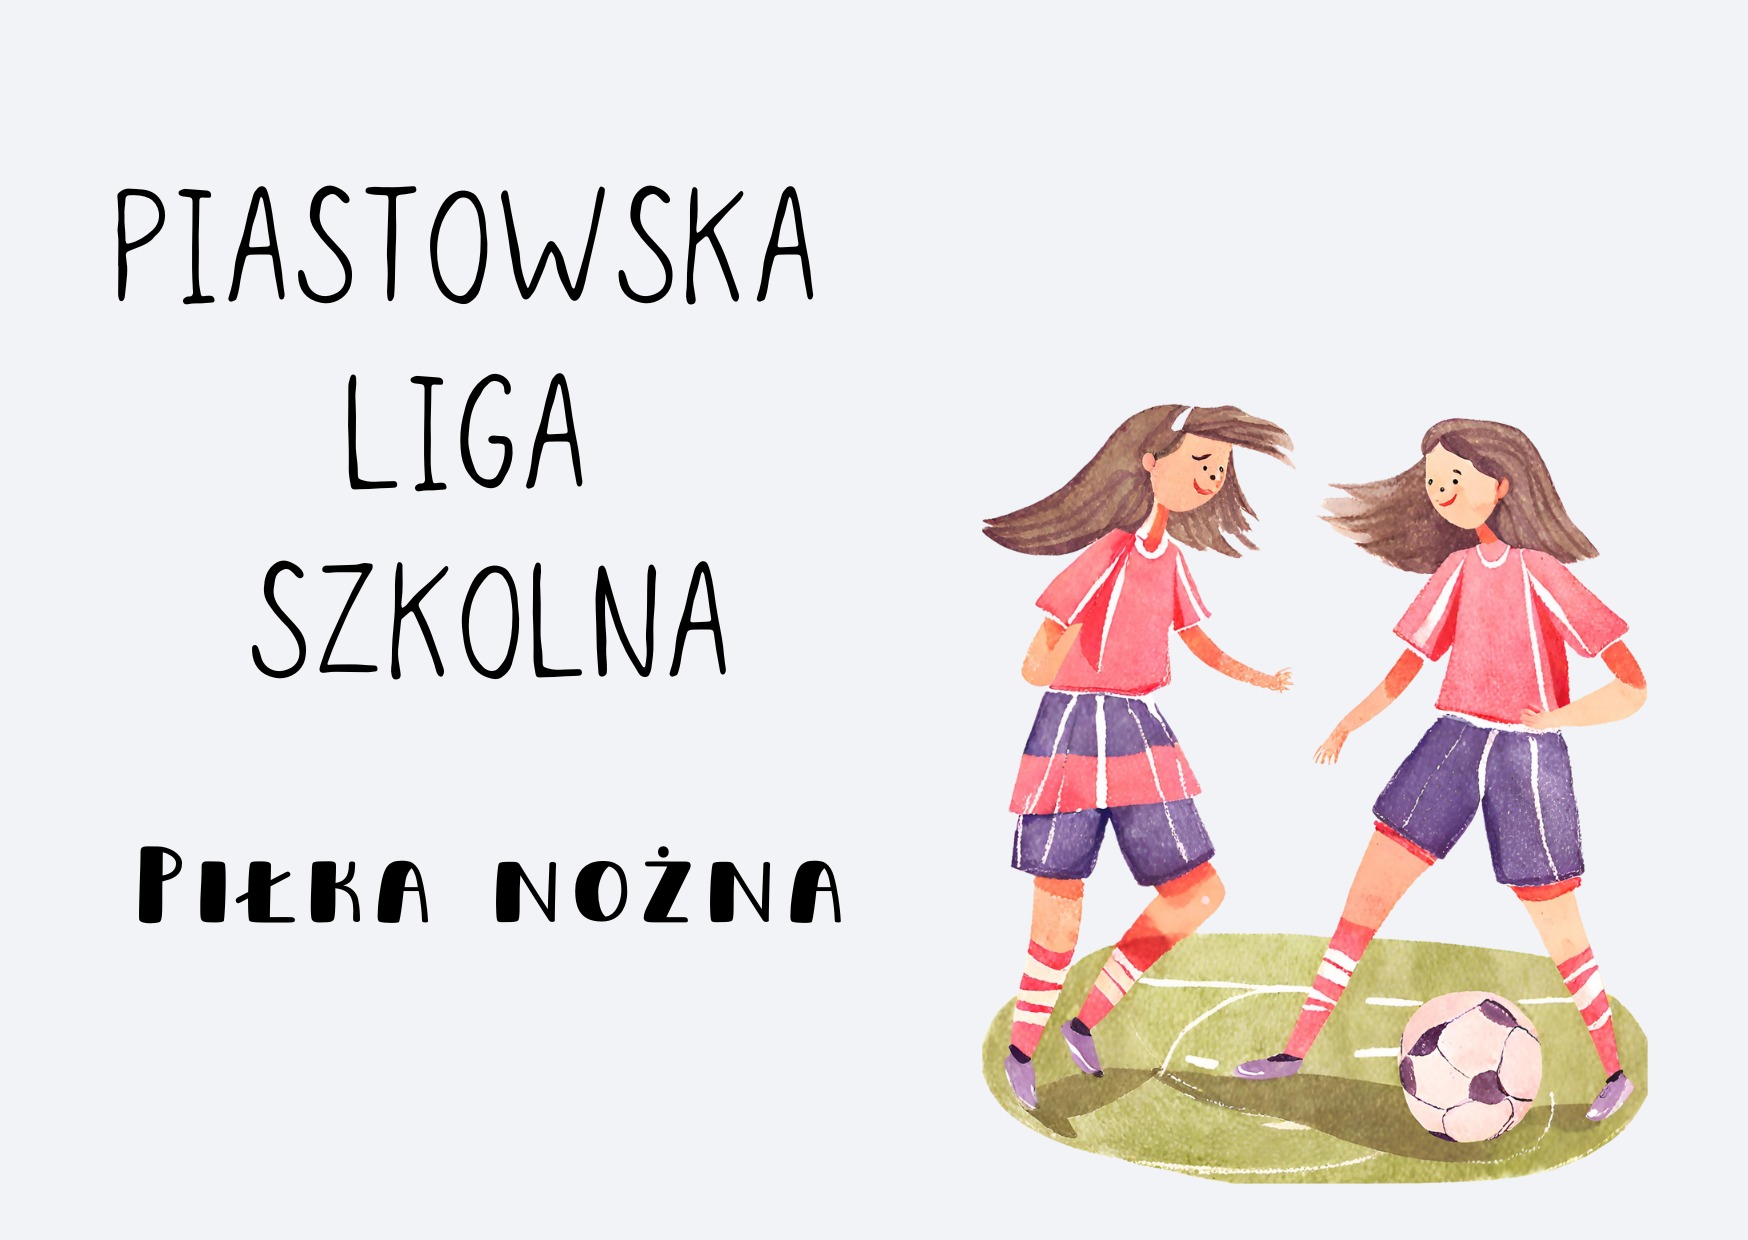 Piastowska Liga Szkolna - piłka nożna dziewcząt - Obrazek 1